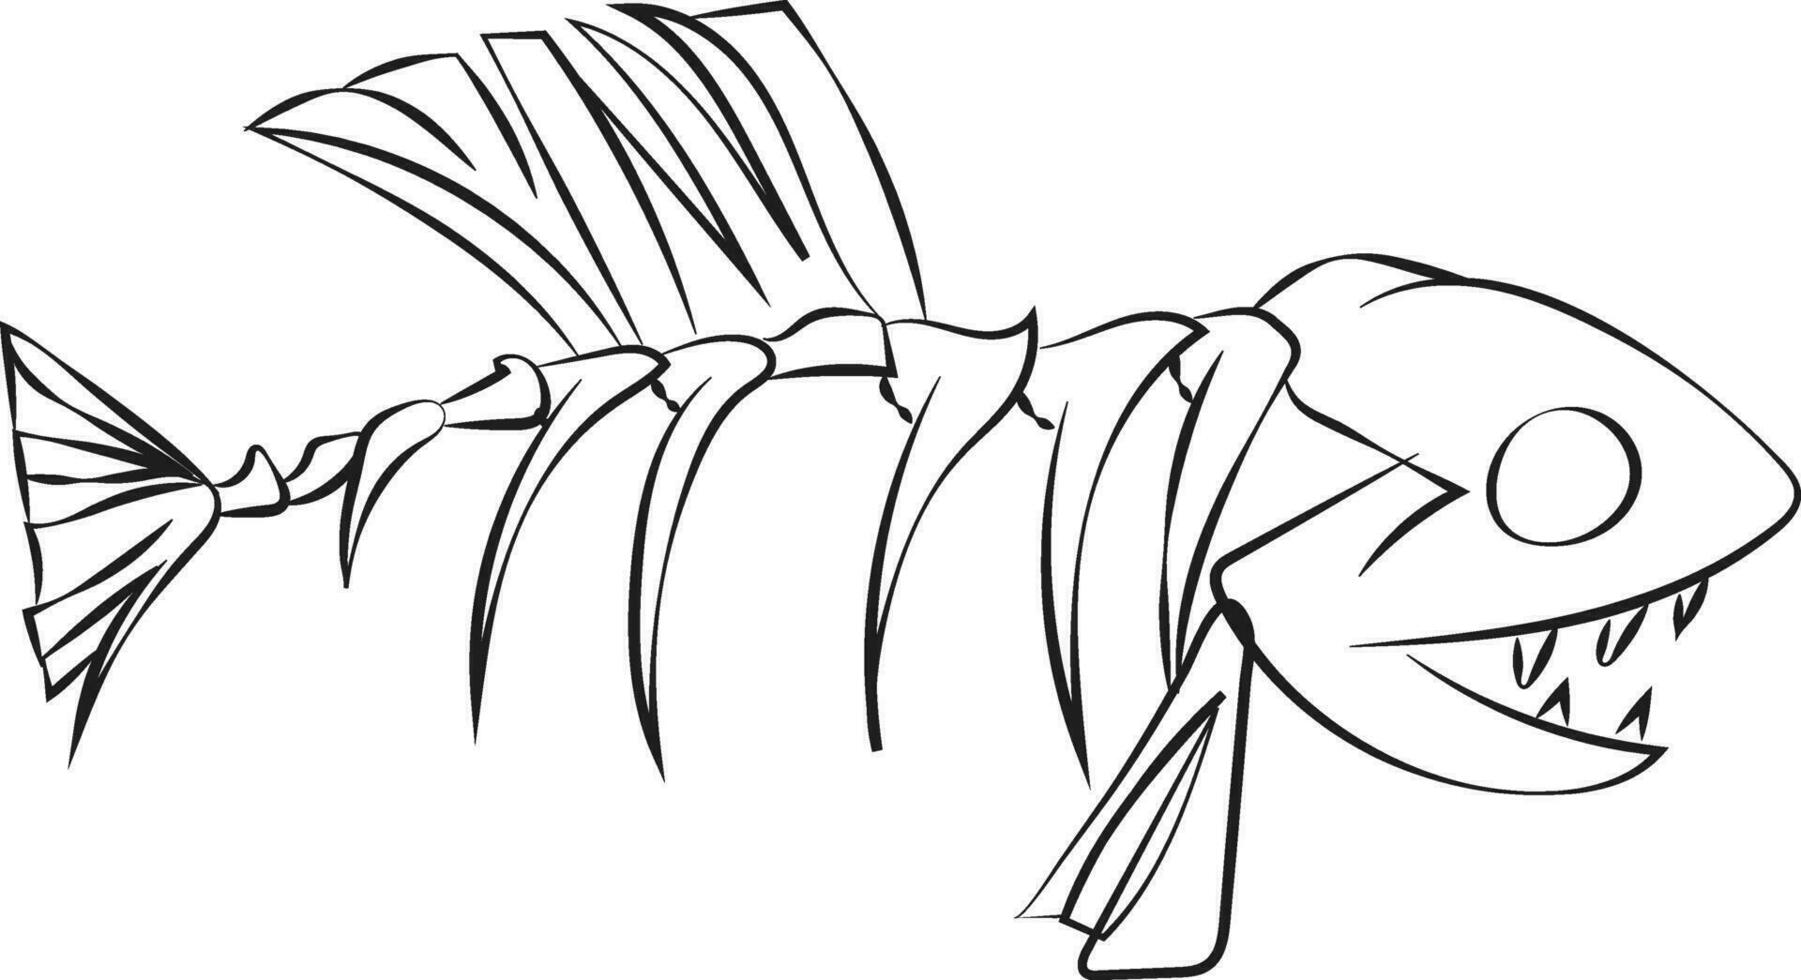 Line art of a fish skeleton vector or color illustration 35434767